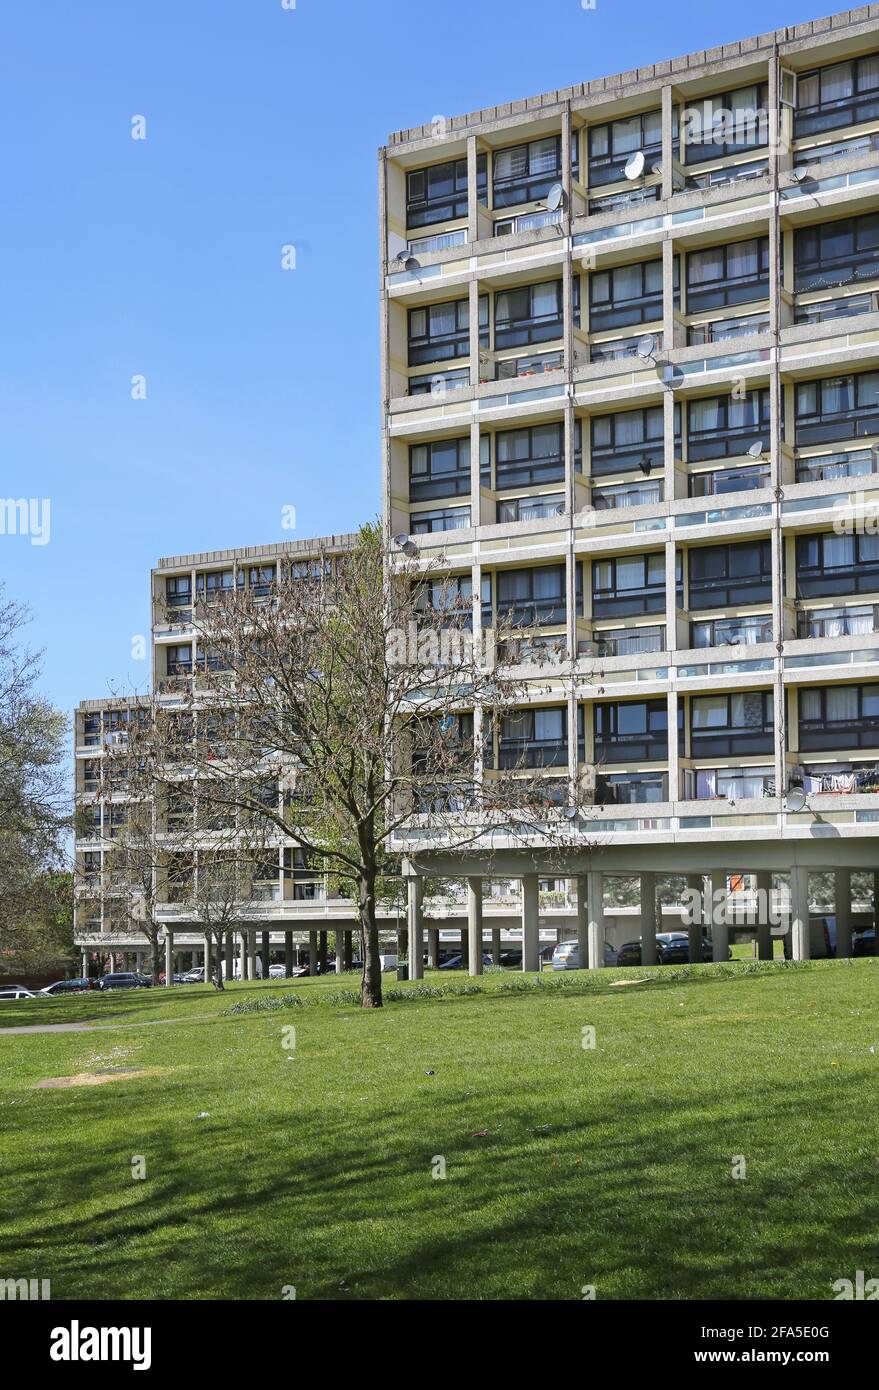 Alton East Estate en Roehampton, Londres, Reino Unido. Famoso esquema de viviendas modernistas de los años 50 inspirado en el Unite d'habitation de Le Corbsier Foto de stock